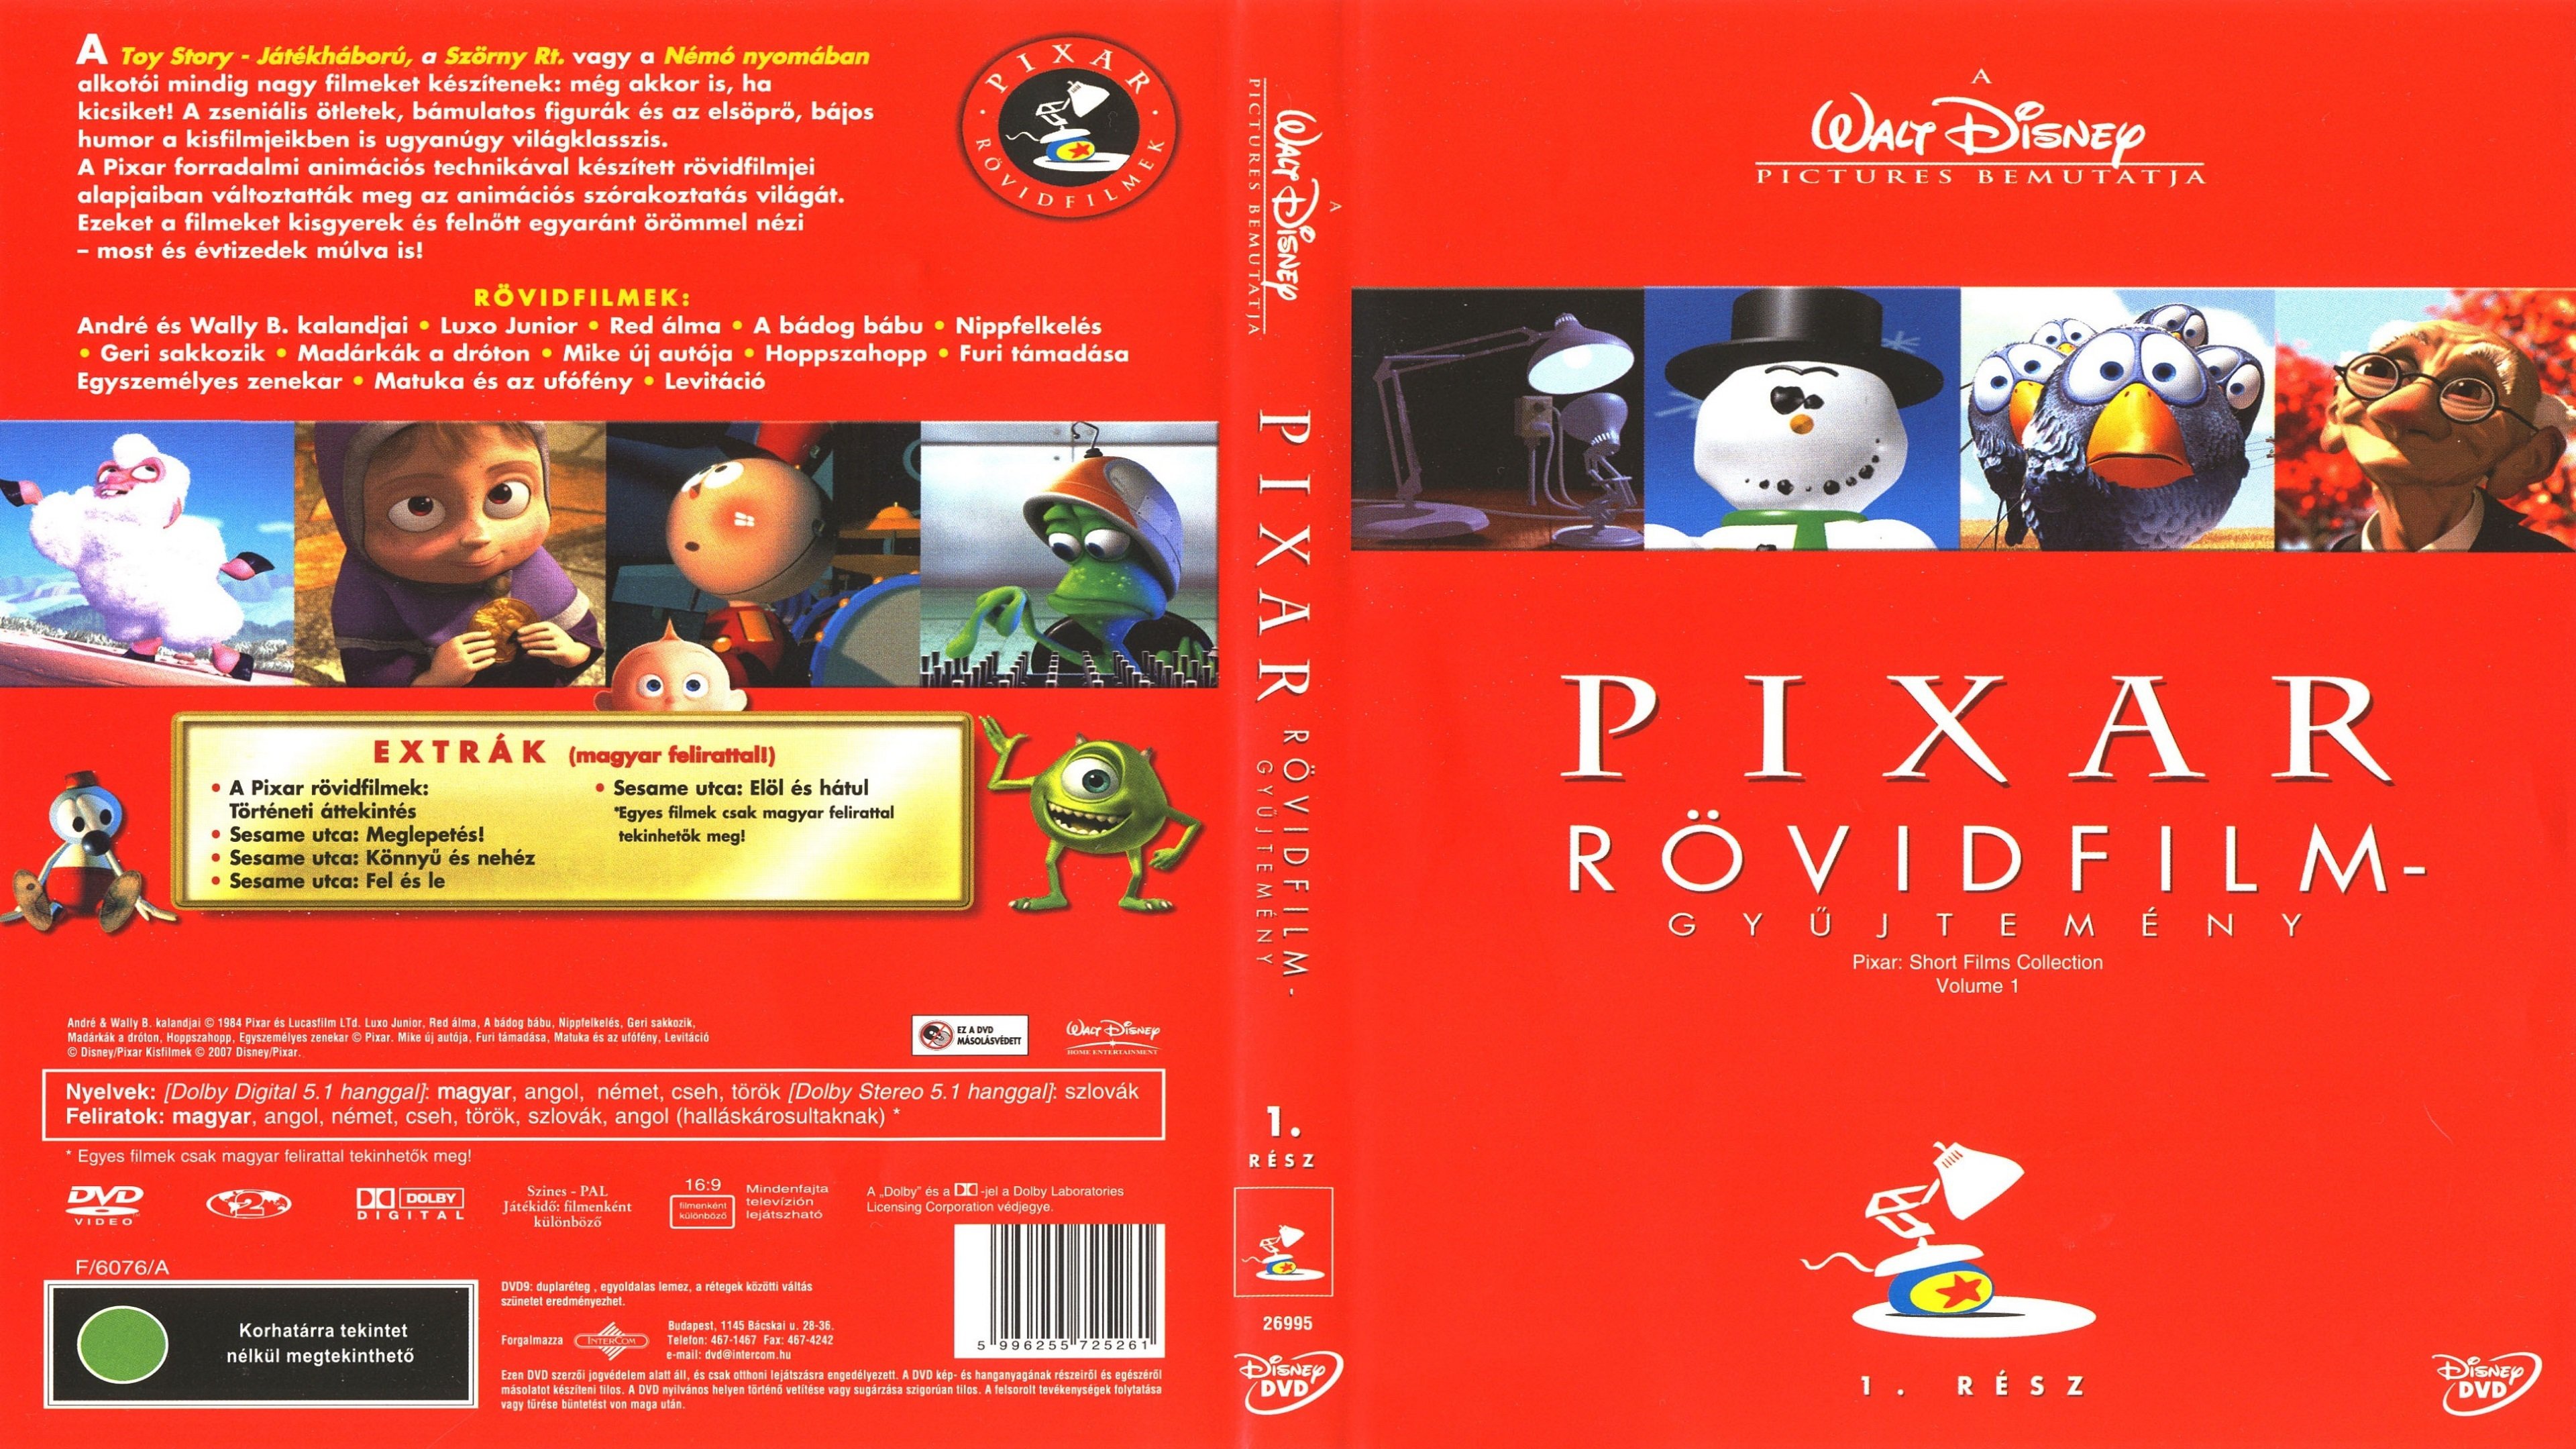 Short films collection. Pixar short films. Pixar short films collection 1. Pixar DVD.